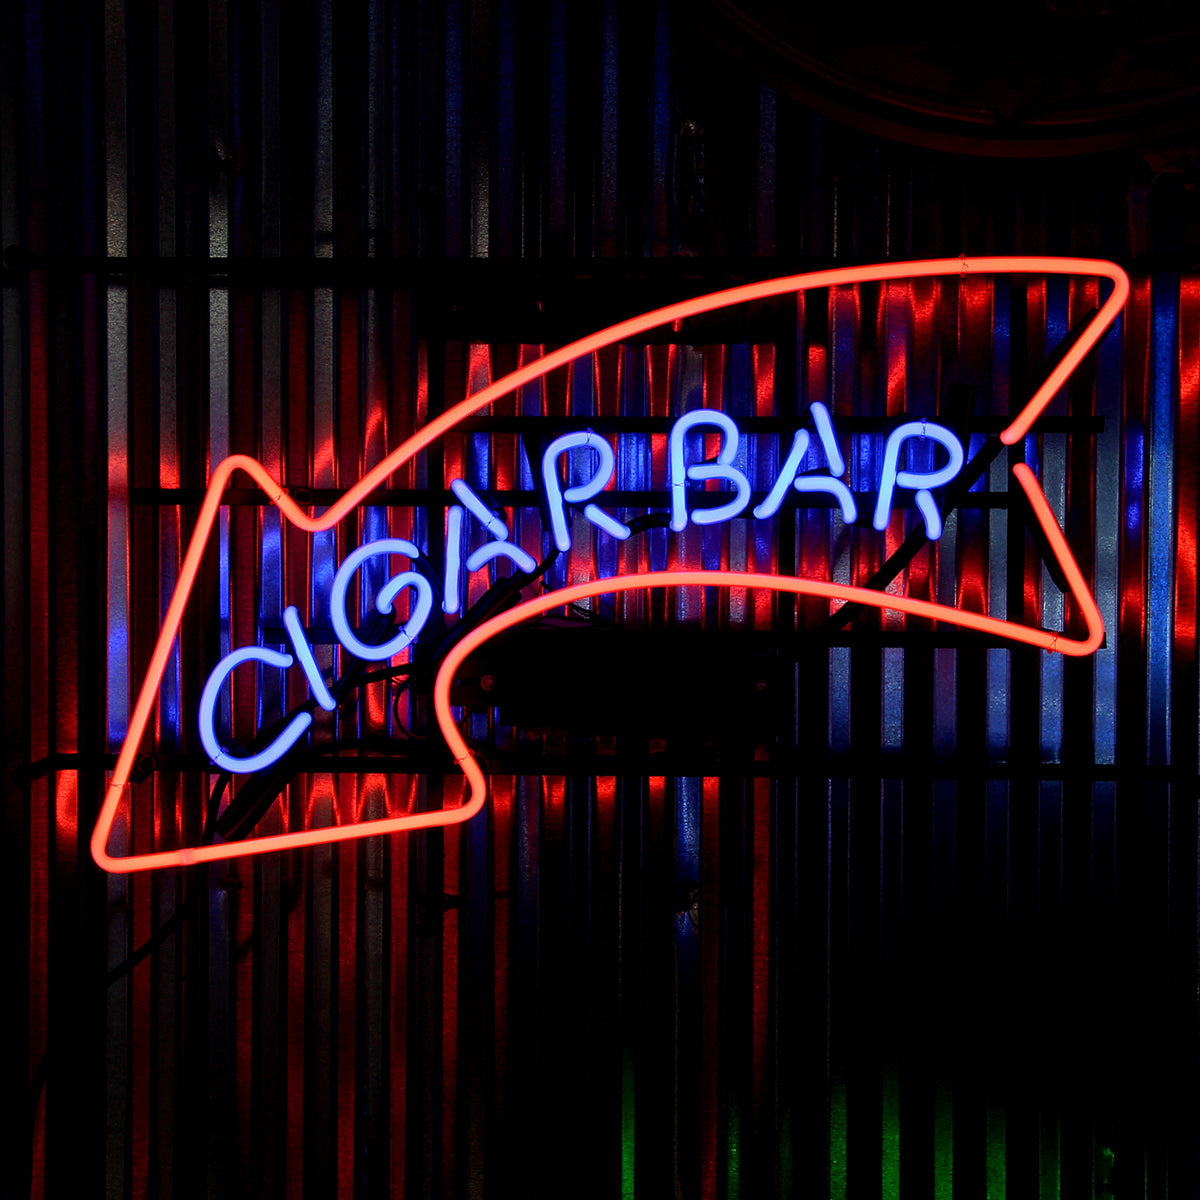 Cigar Bar Neon Sign